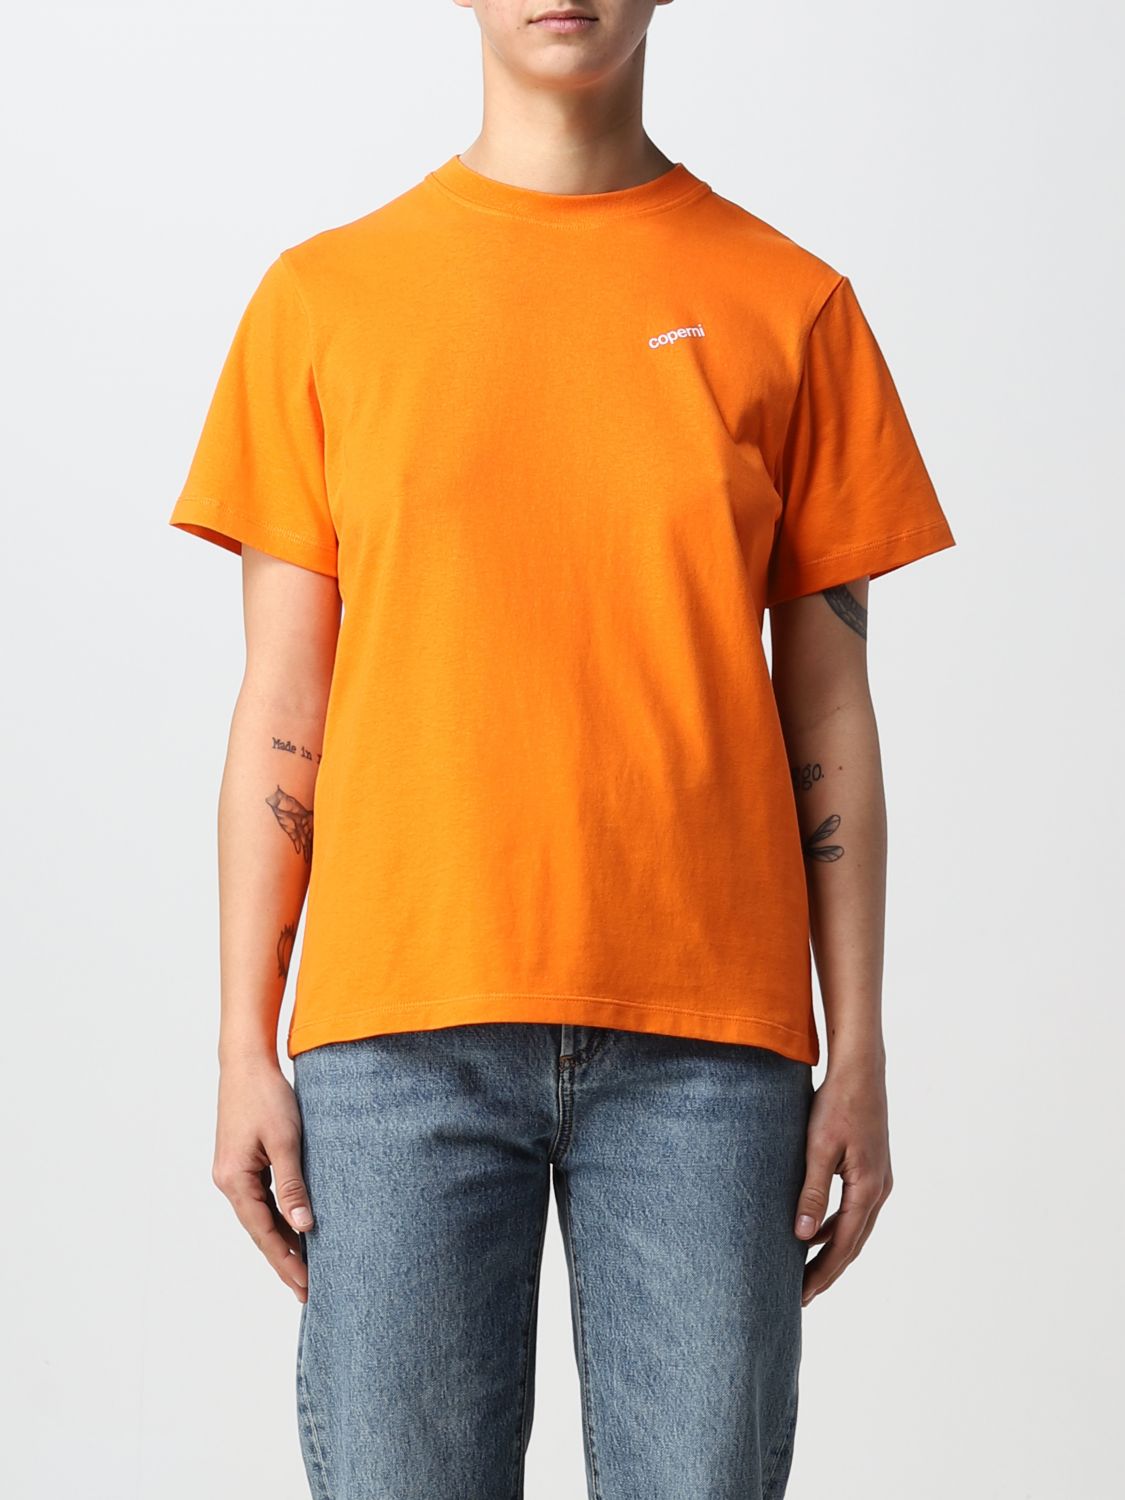 Coperni T-Shirt COPERNI Woman colour Orange